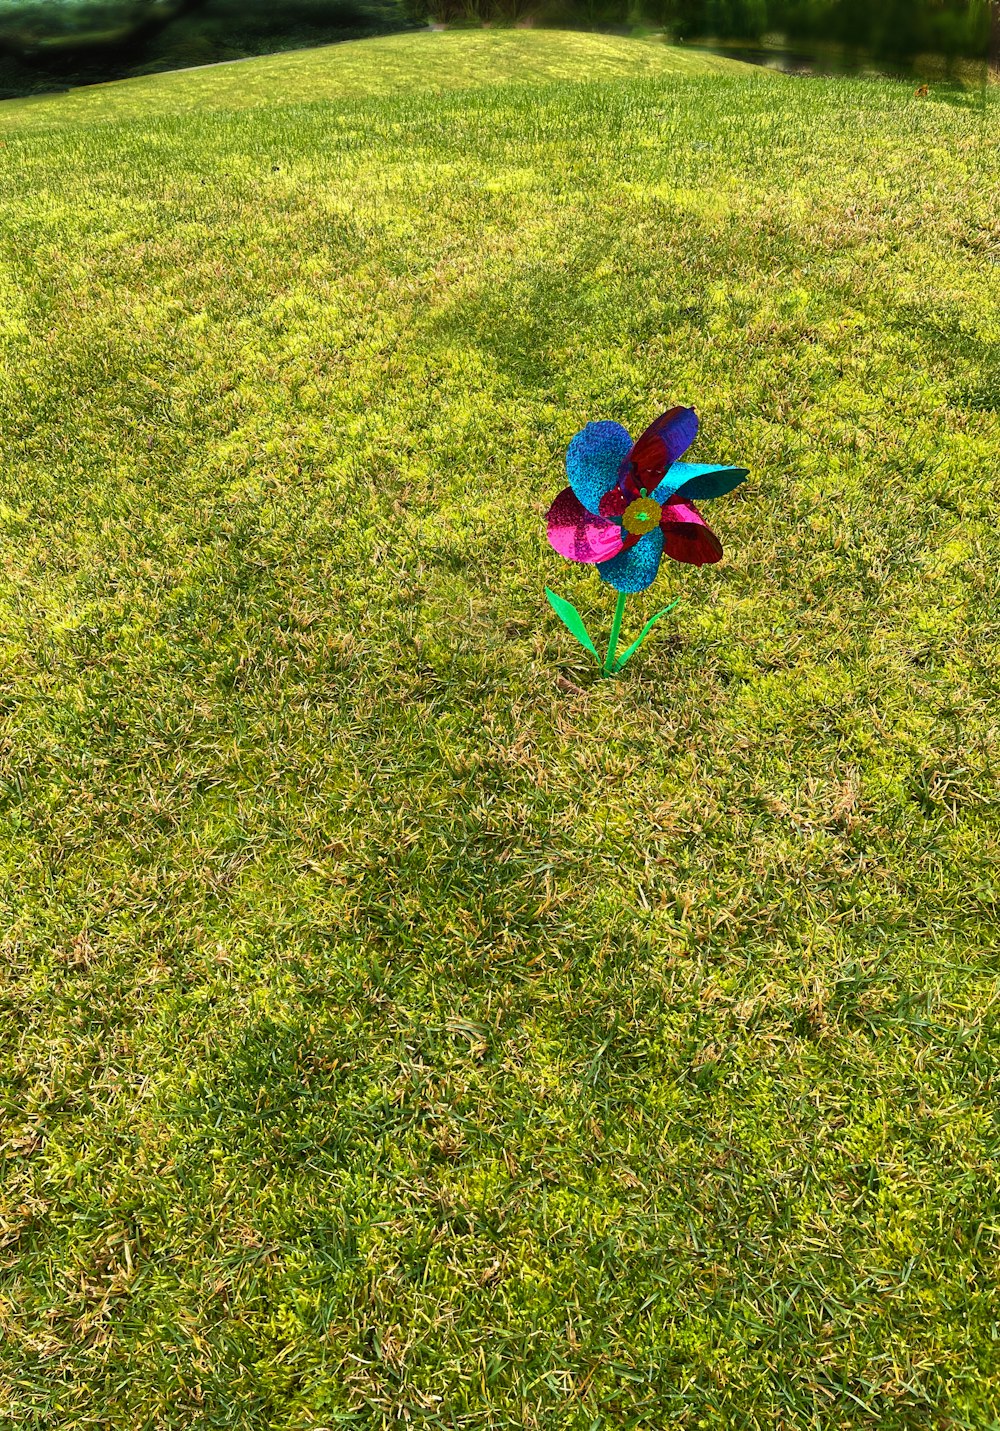 Una girandola colorata in un campo erboso